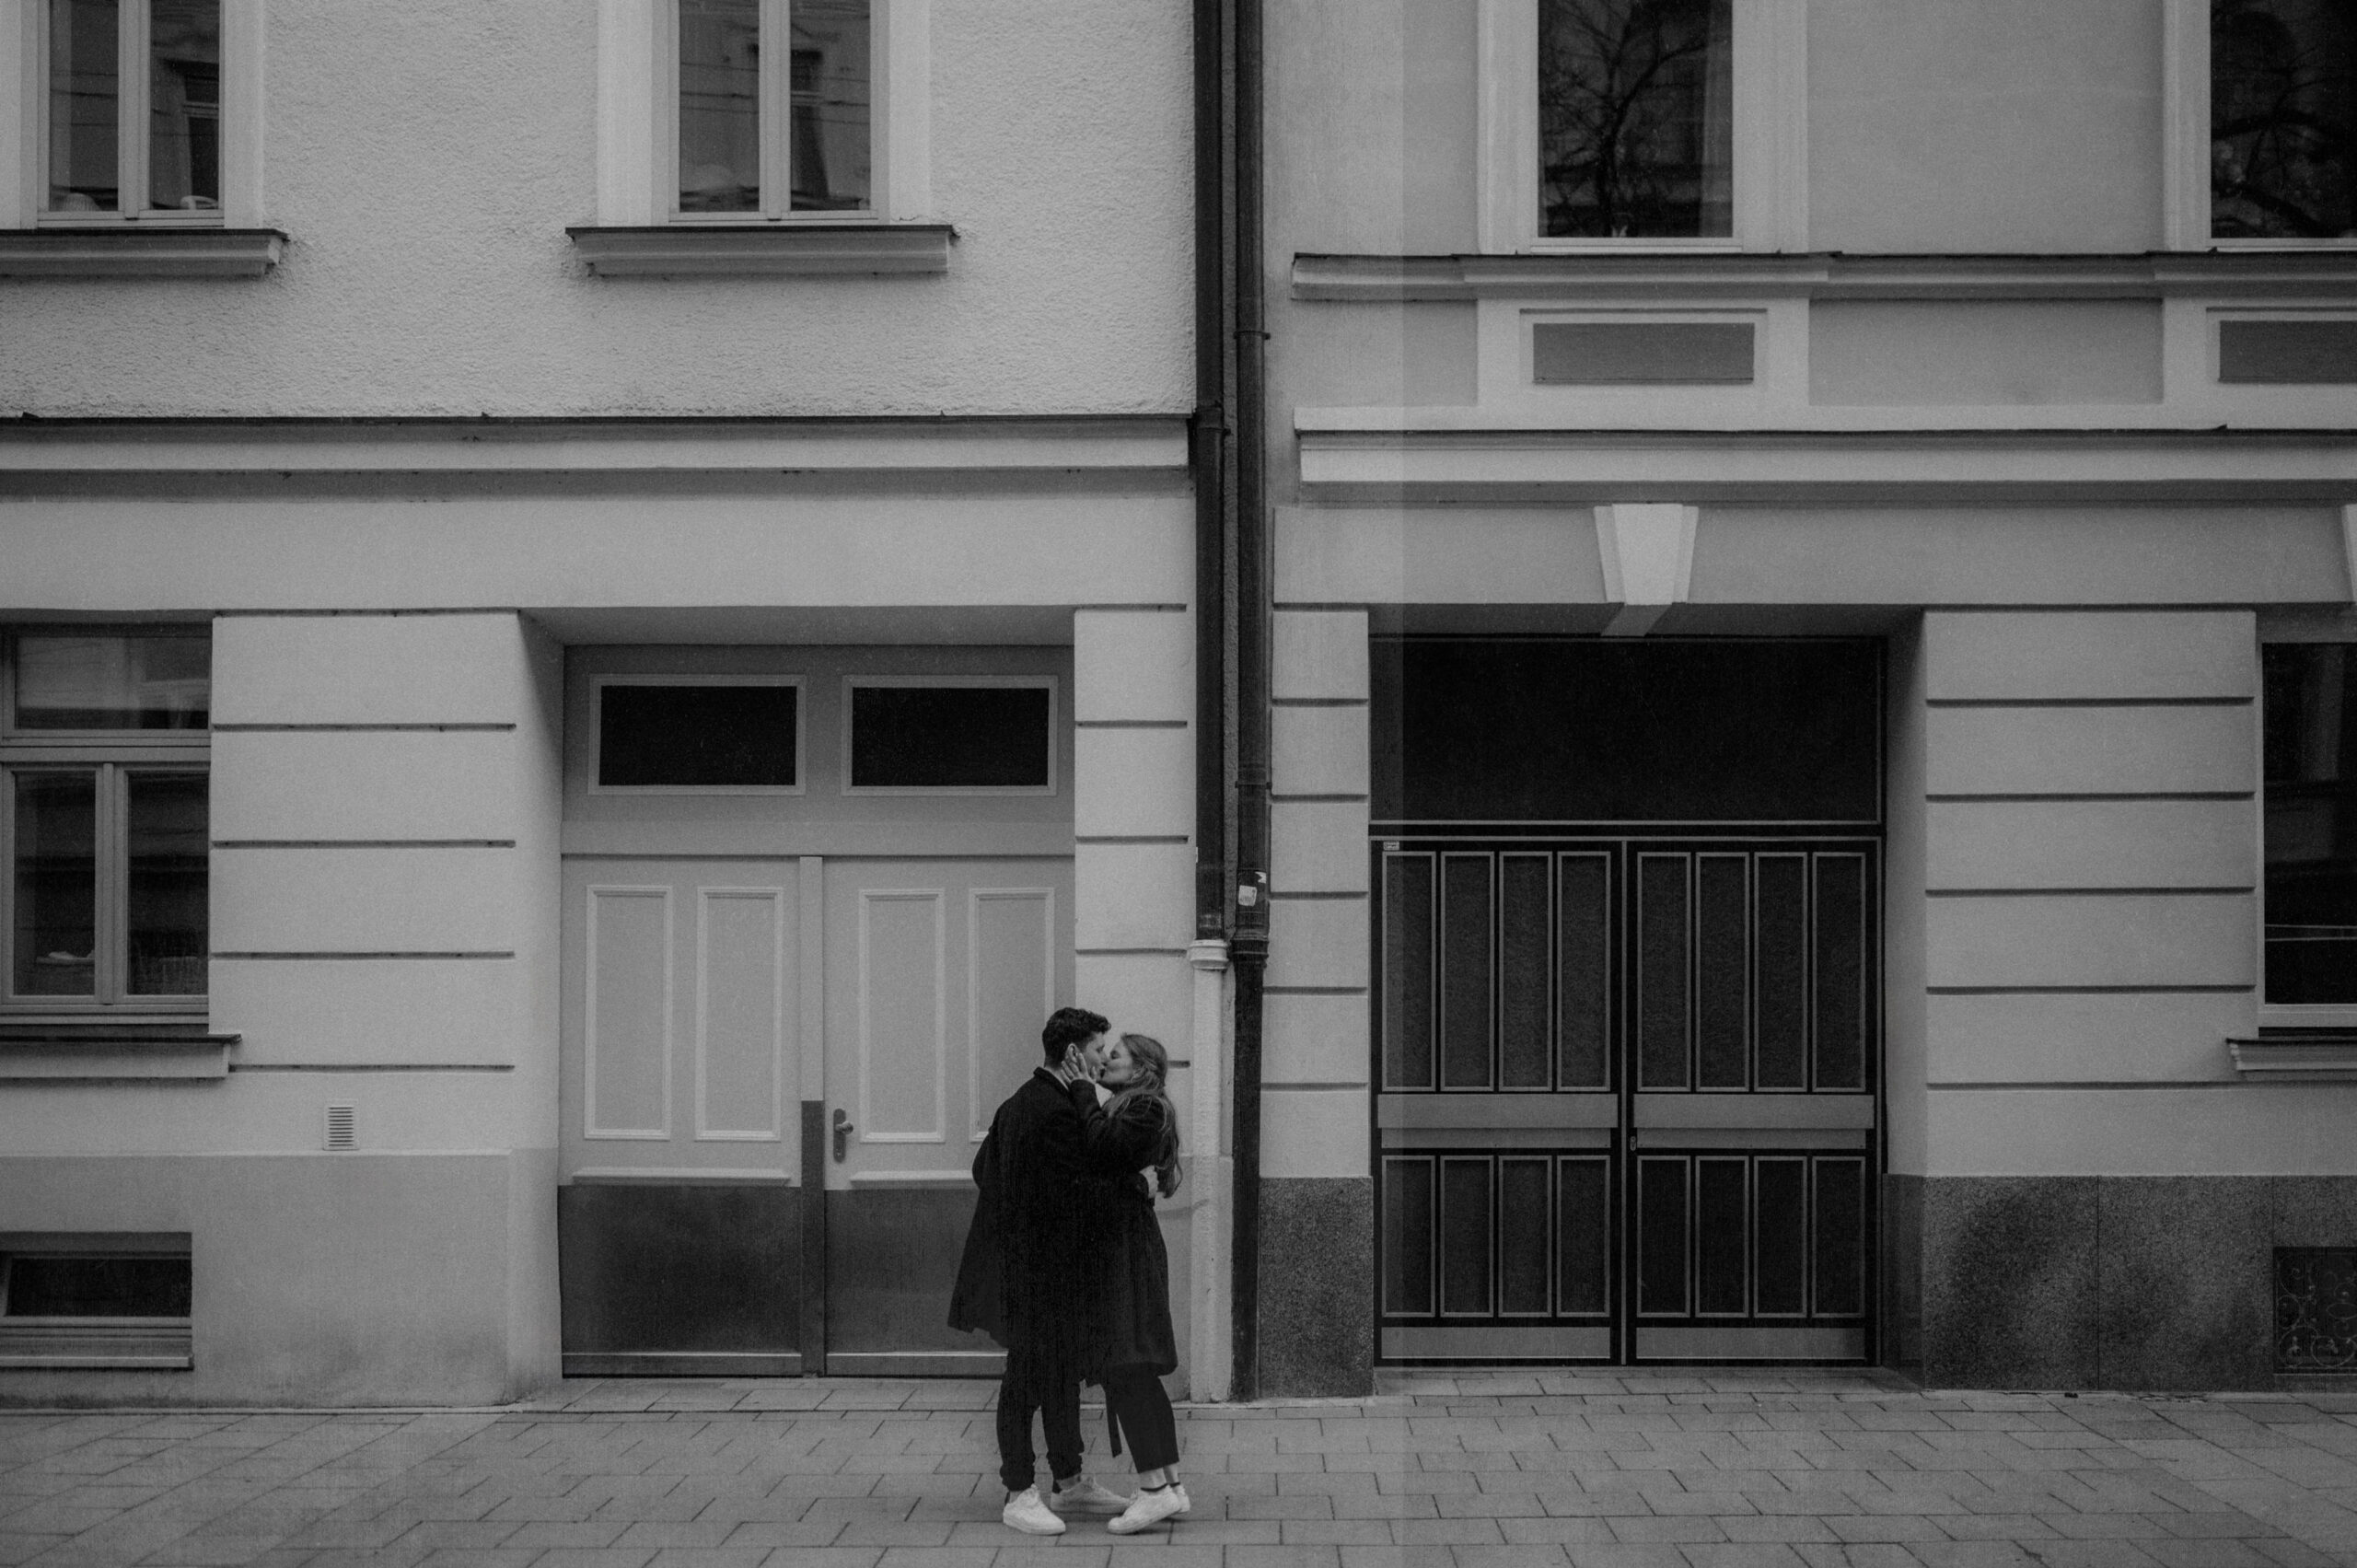 Schwarz weiß Bild von einen Paar in Haidhausen in München vor Altbau